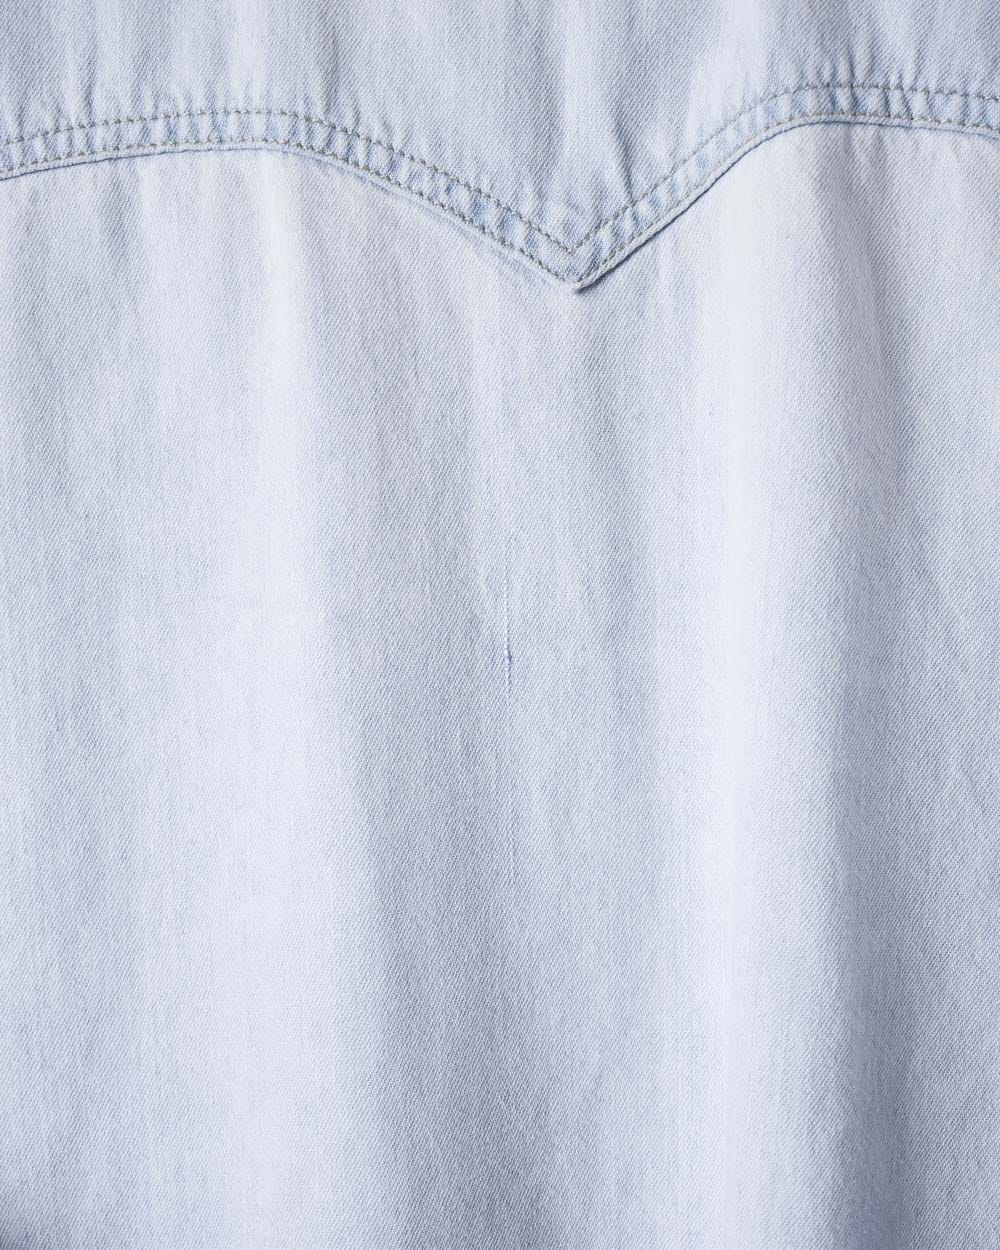 BabyBlue Levi's Denim Shirt - X-Large